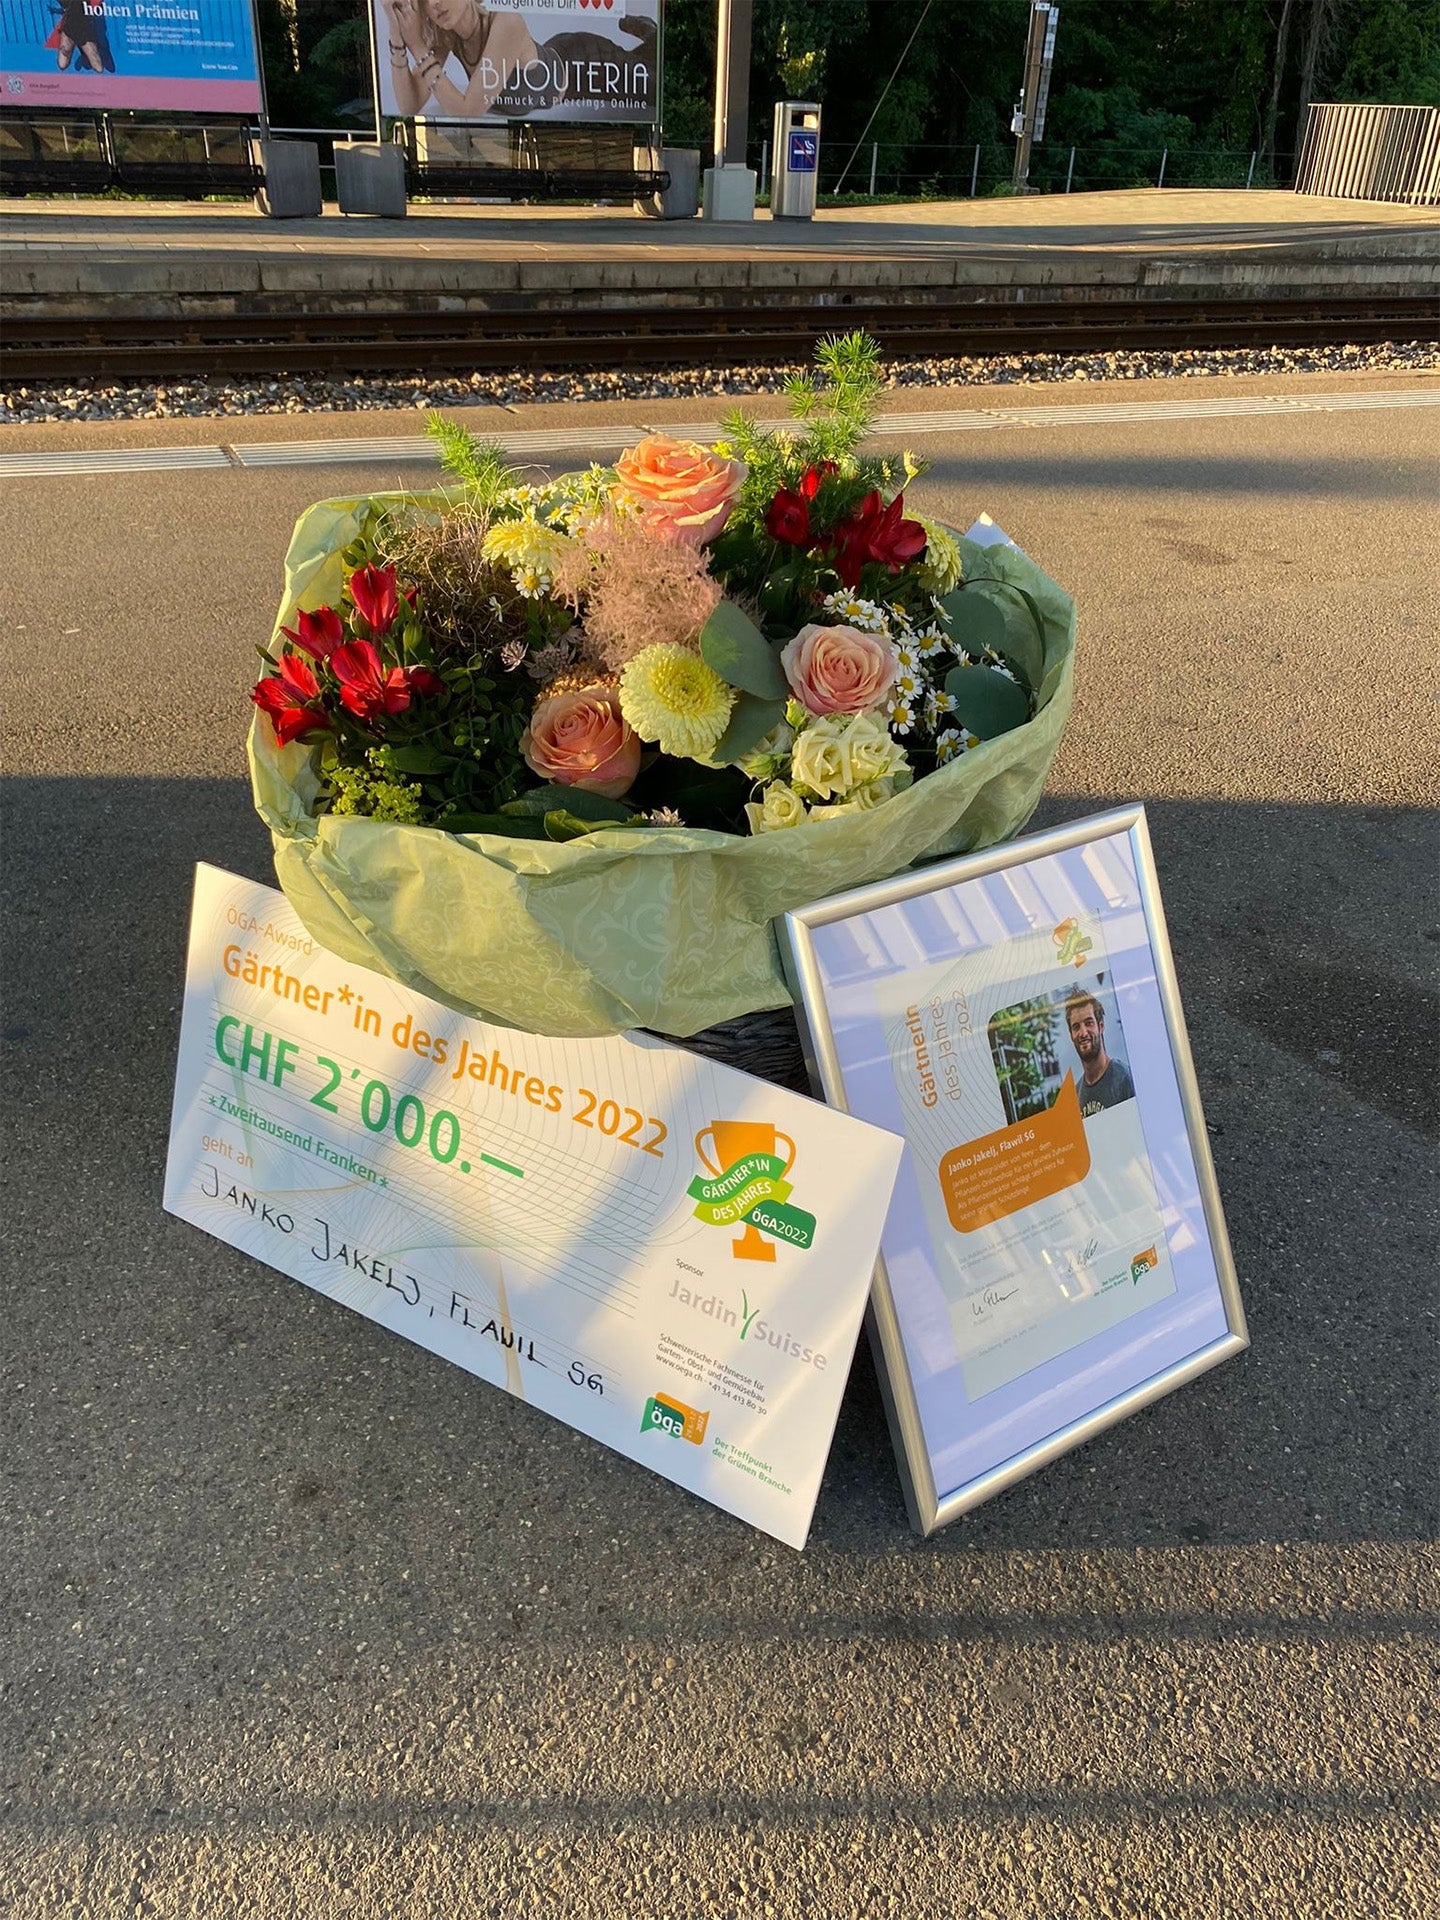 Bild eines Blumenstrausses und eines grossen Gutscheins: Auszeichnung Janko für Gärtner des Jahres.